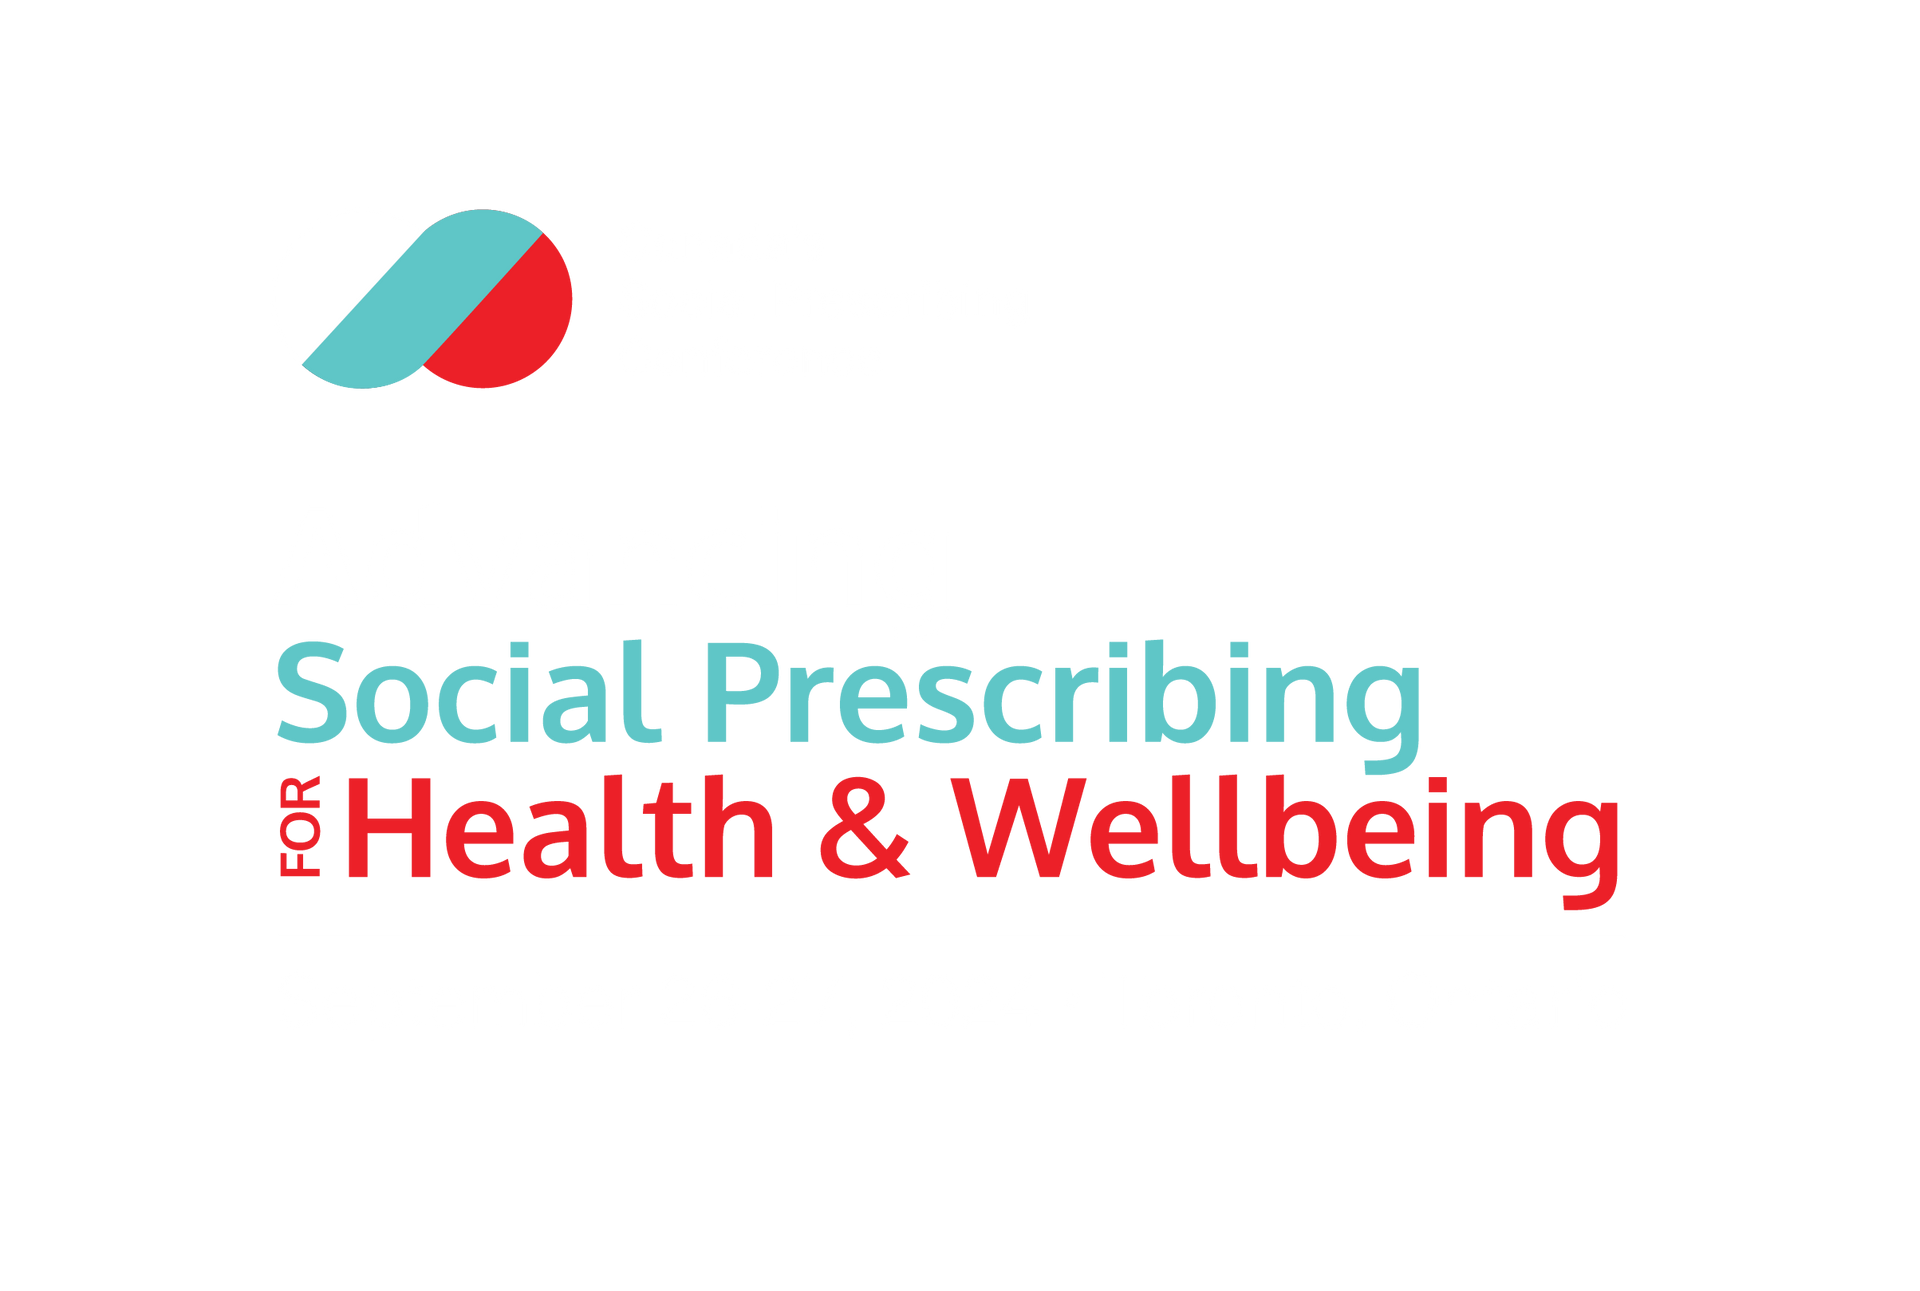 Canada’s Social Prescribing Conference - Advancing Social Prescribing for Health & Wellbeing